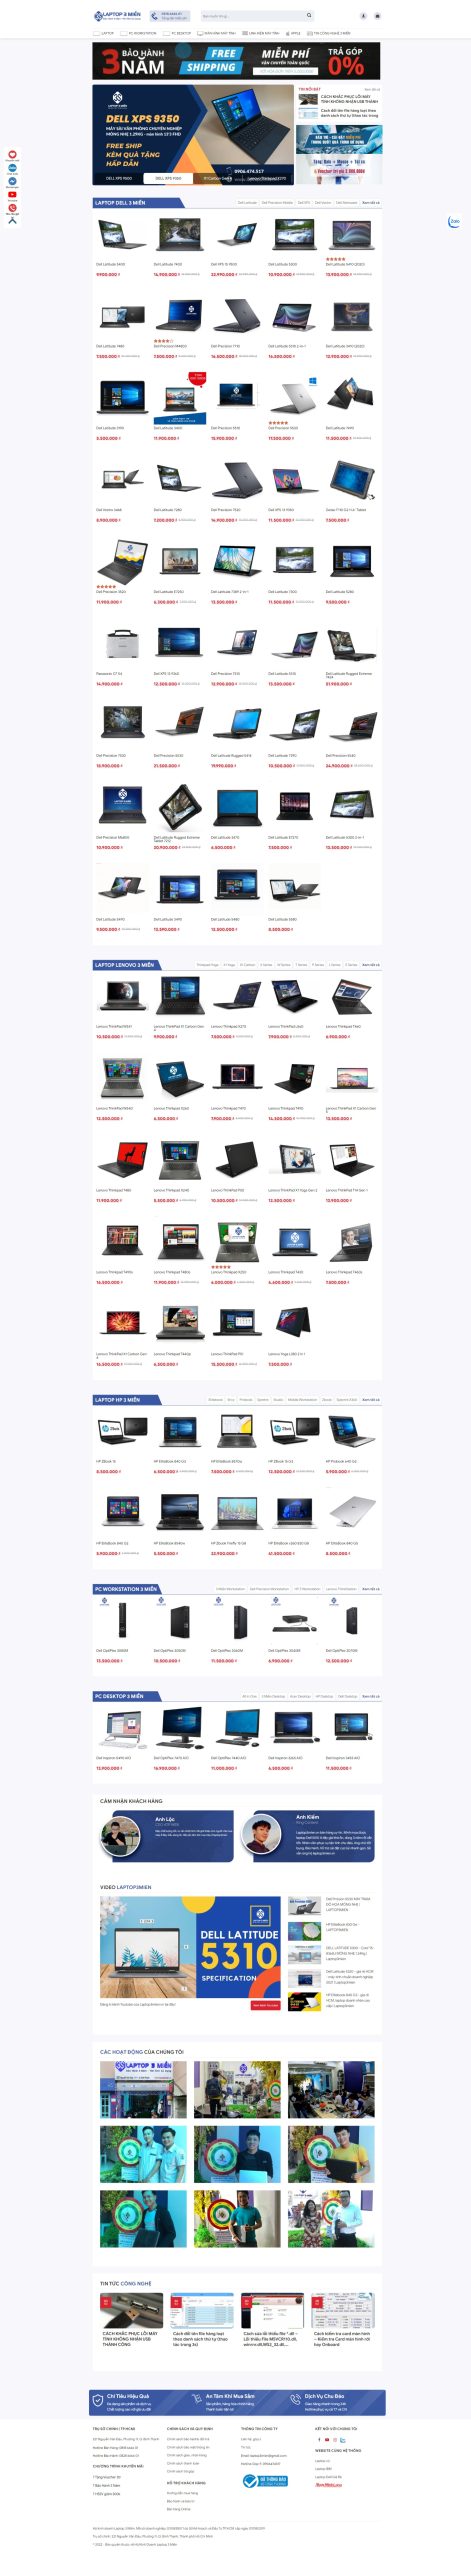 Giao diện website bán hàng công nghệ, điện tử đẹp